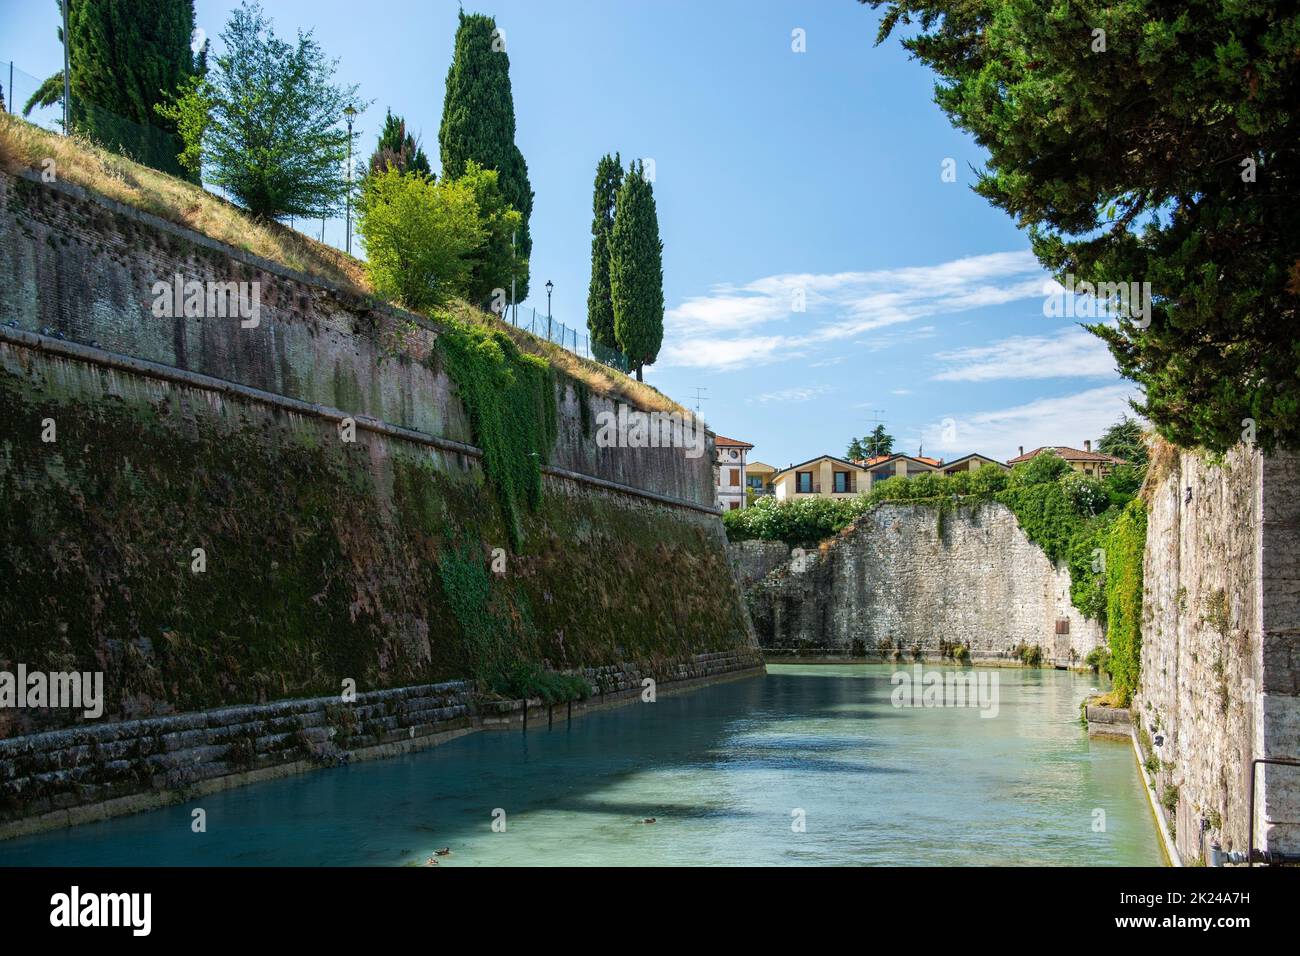 Peschiera del Garda ist eine italienische Gemeinde in der Provinz Verona, région Venetien.Teile der Altstadt trennen mit ihren Festungsanlagen den or Banque D'Images